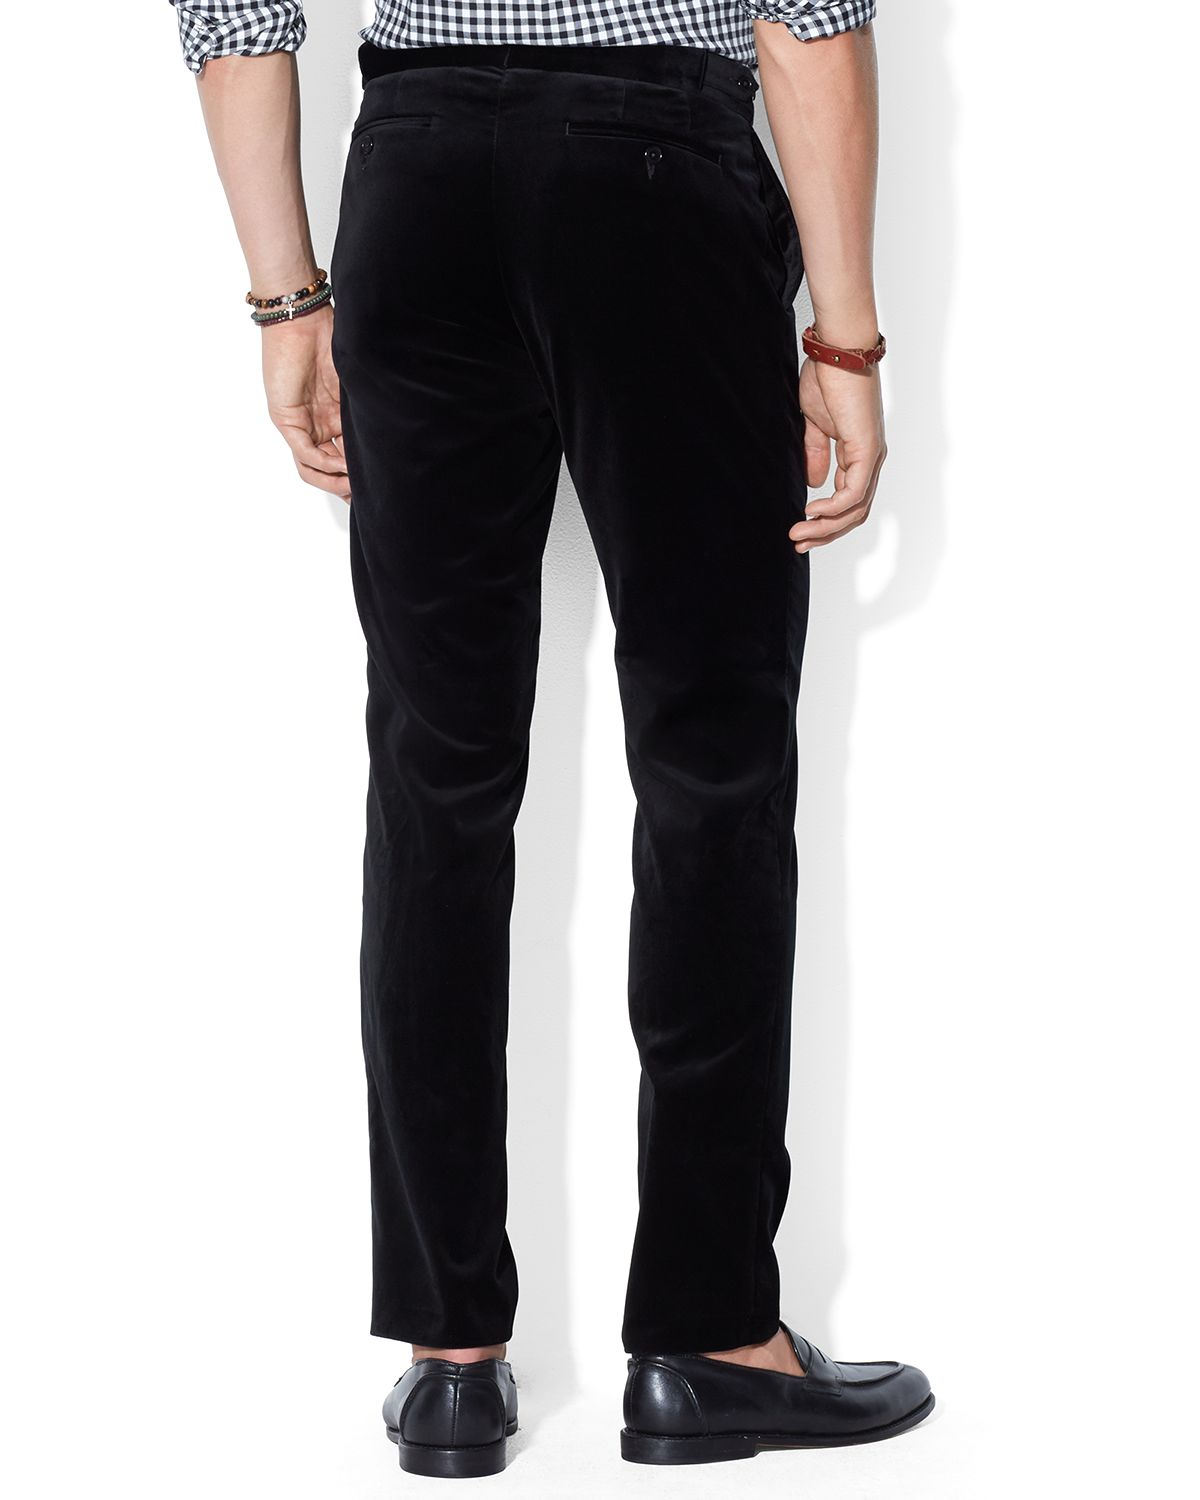 Lyst - Ralph lauren Polo Slim-Fit Hudson Velvet Pants in Black for Men